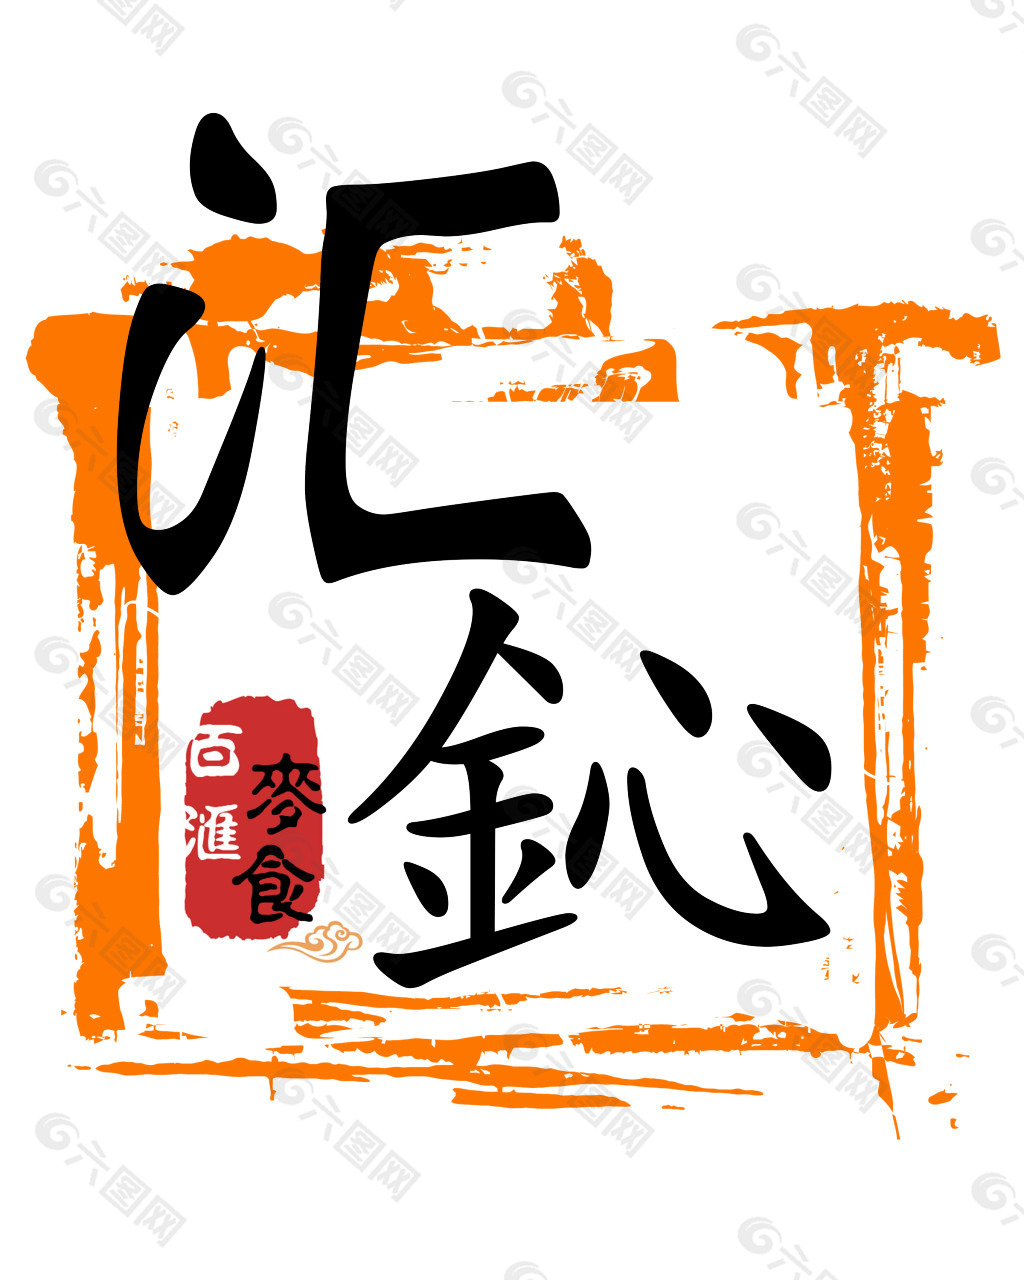 汇鈊 logo